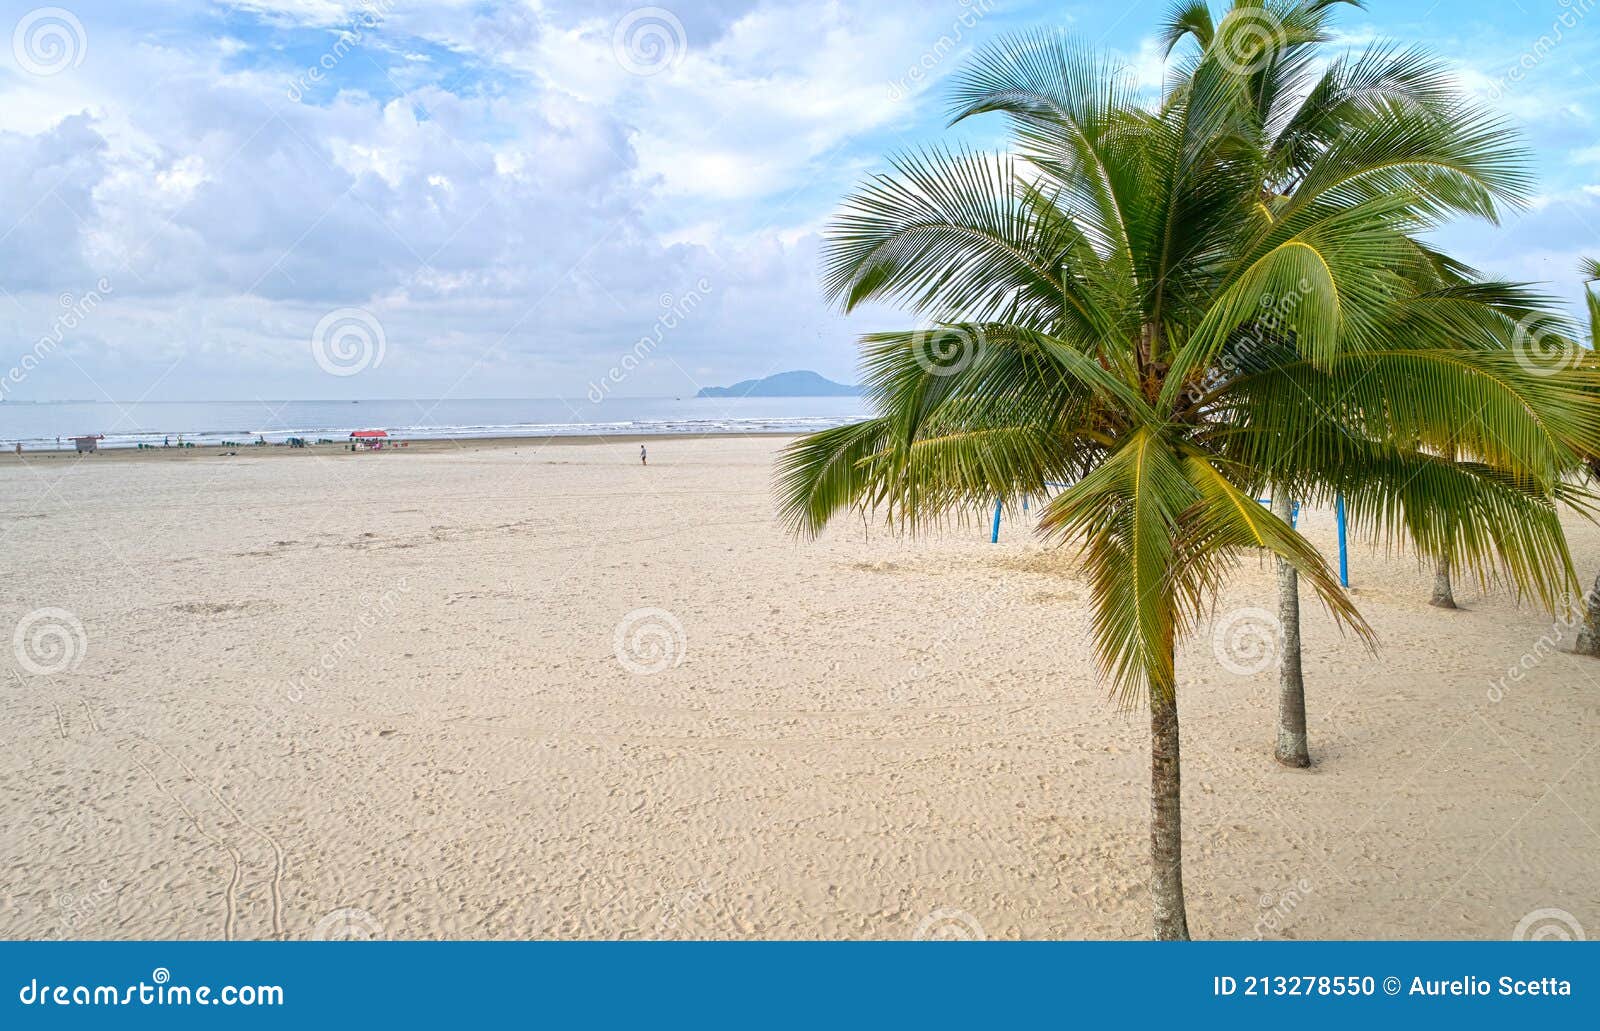 palm tree on the beach of santos city